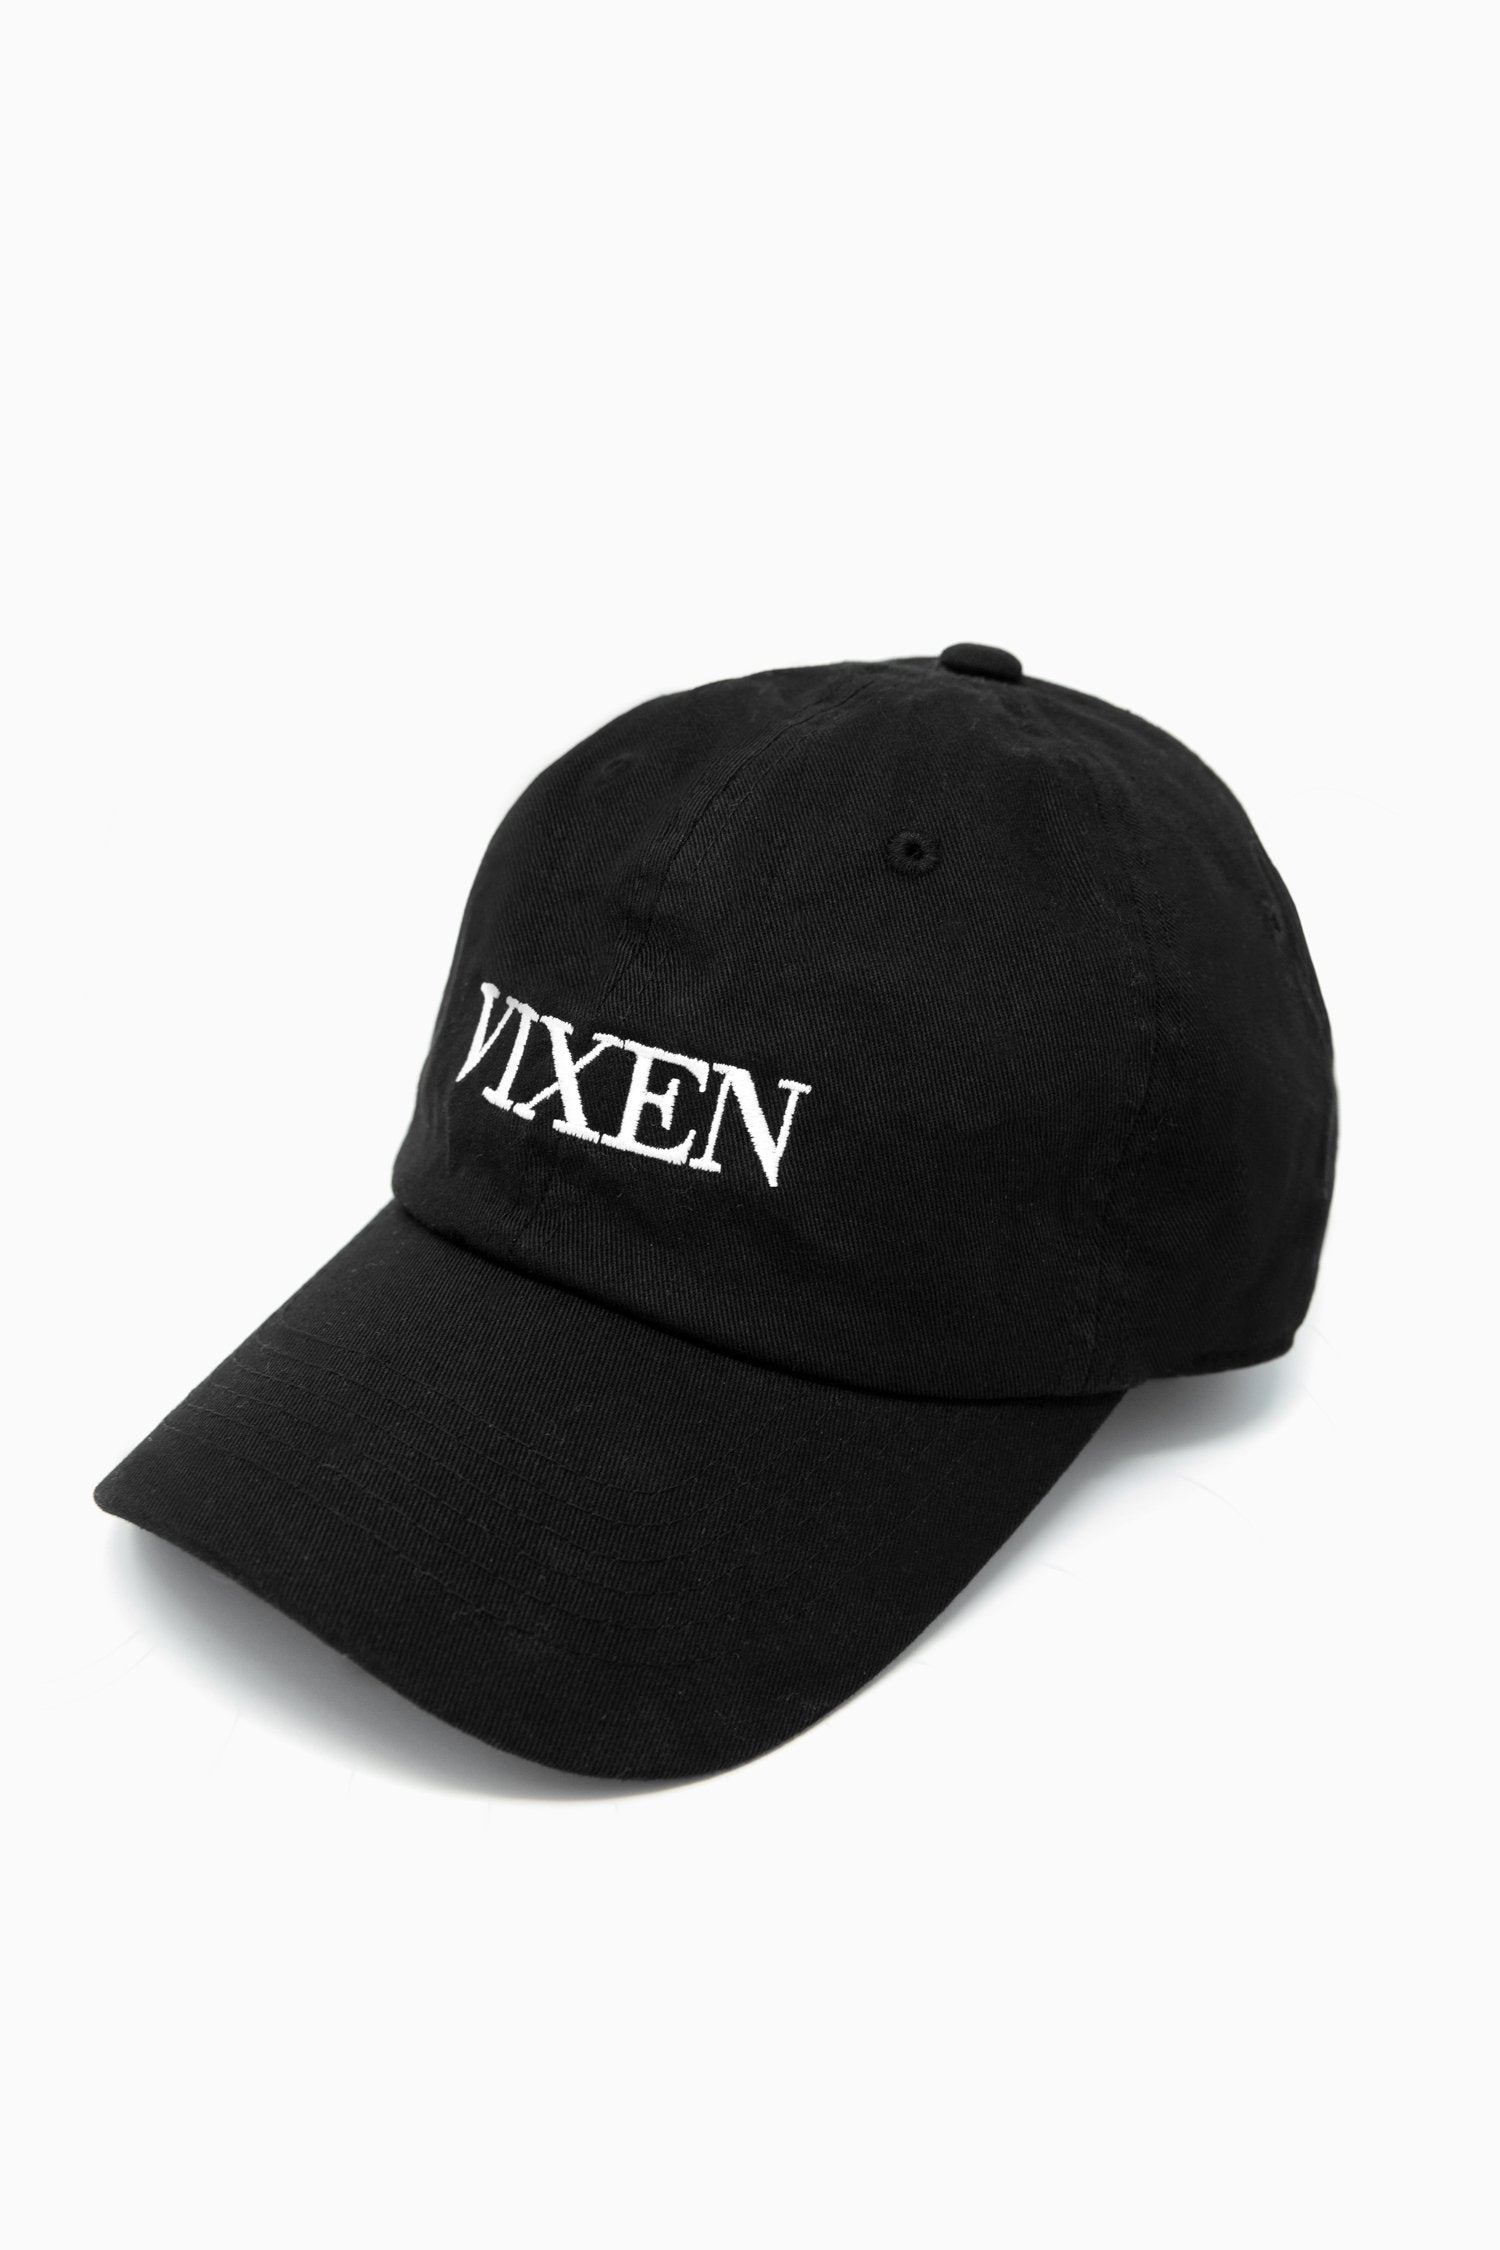 Vixen Logo Dad Hat